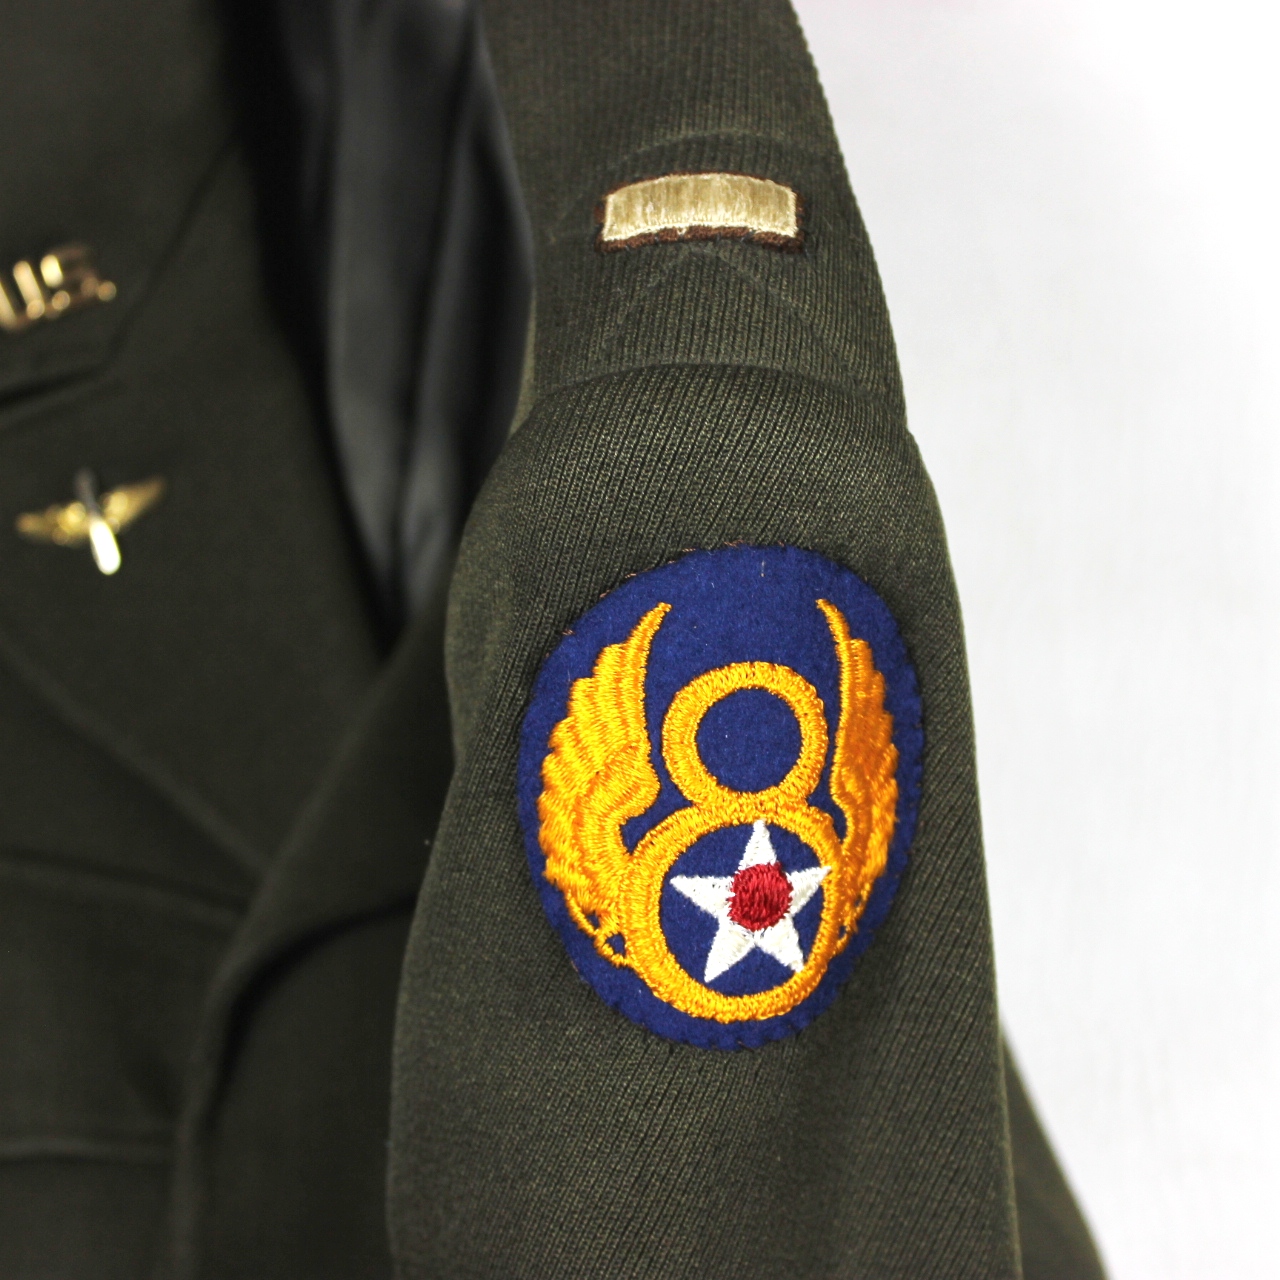 USAAF officer's Ike jacket - 8th AF/ bullion wings